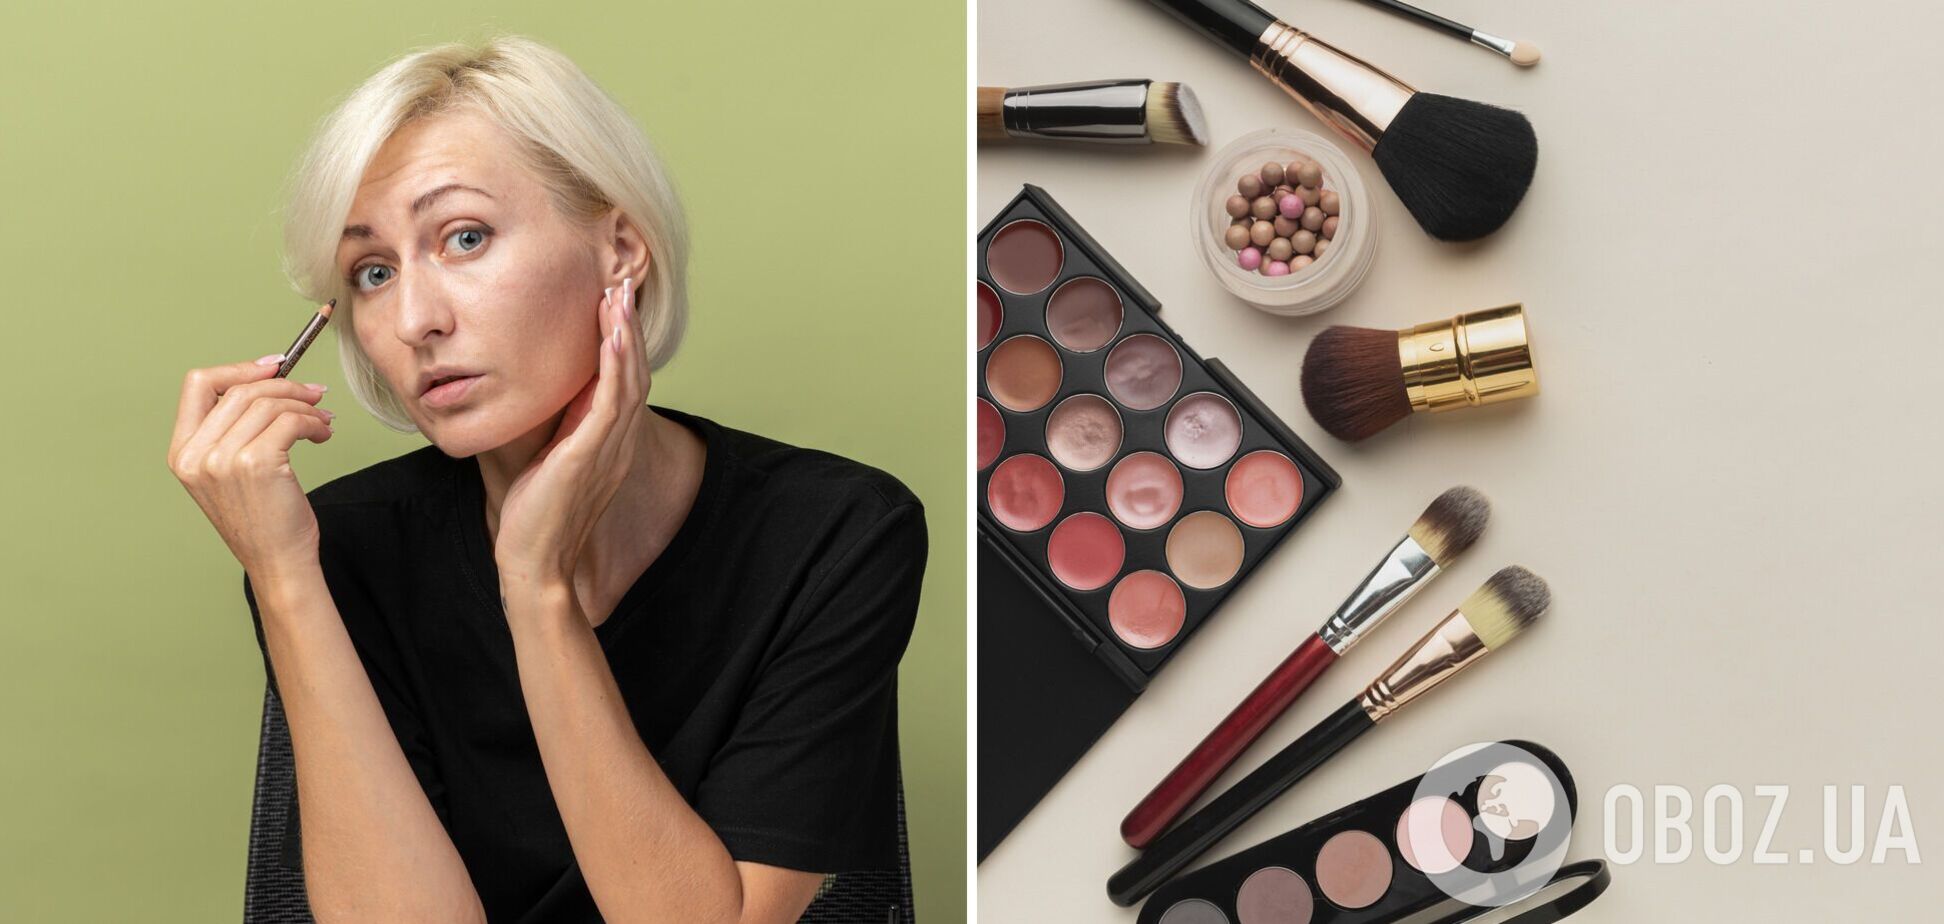 Четыре секрета макияжа для женщин 40+, которые позволят 'сбросить' 10 лет. Фото